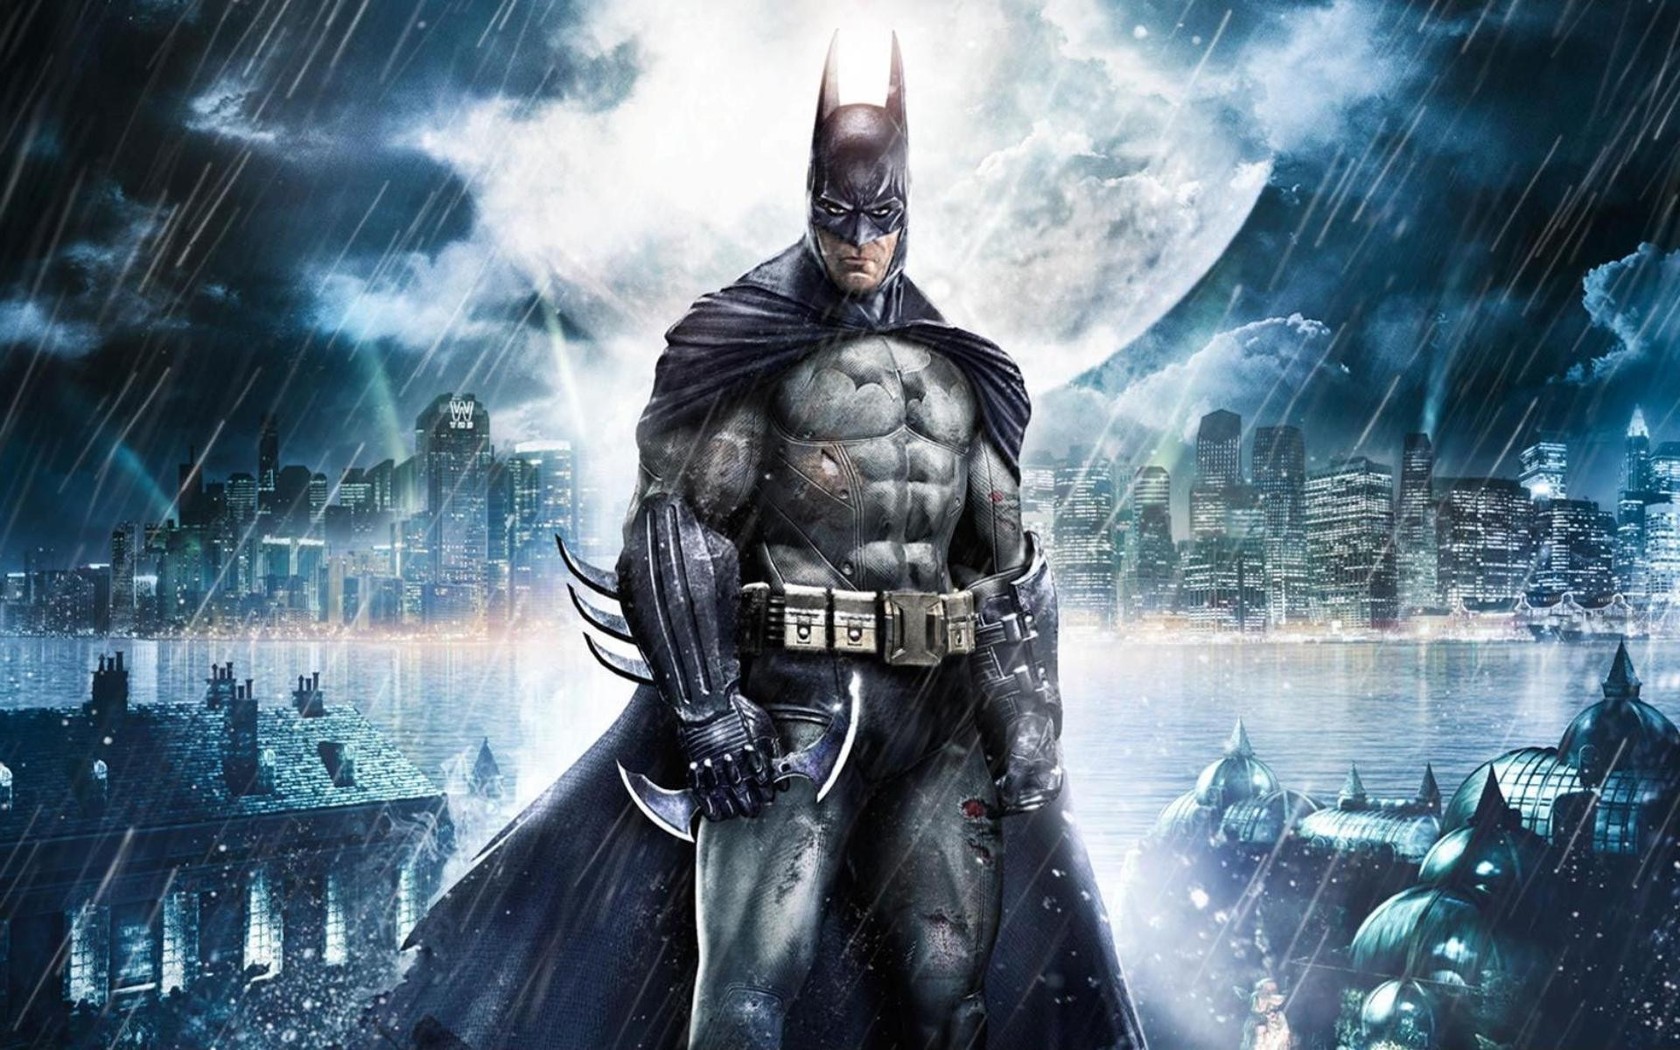 Download Wallpapers Of Batman - Wallpaper Zone